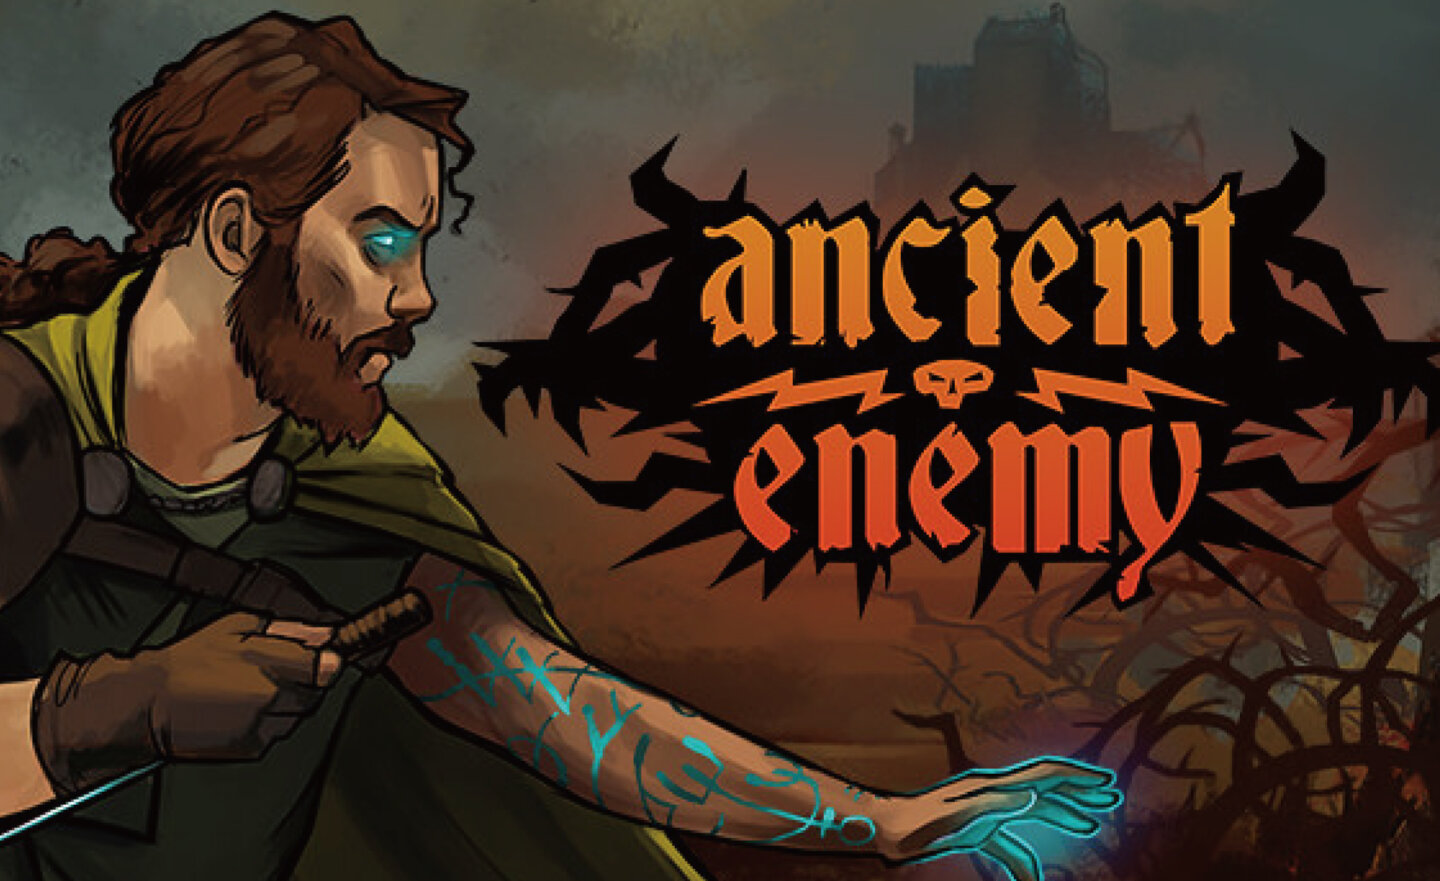 【限時免費】策略 RPG 卡牌遊戲《Ancient Enemy》放送中，領取時間至 6 月 29 日晚上 9:00 截止